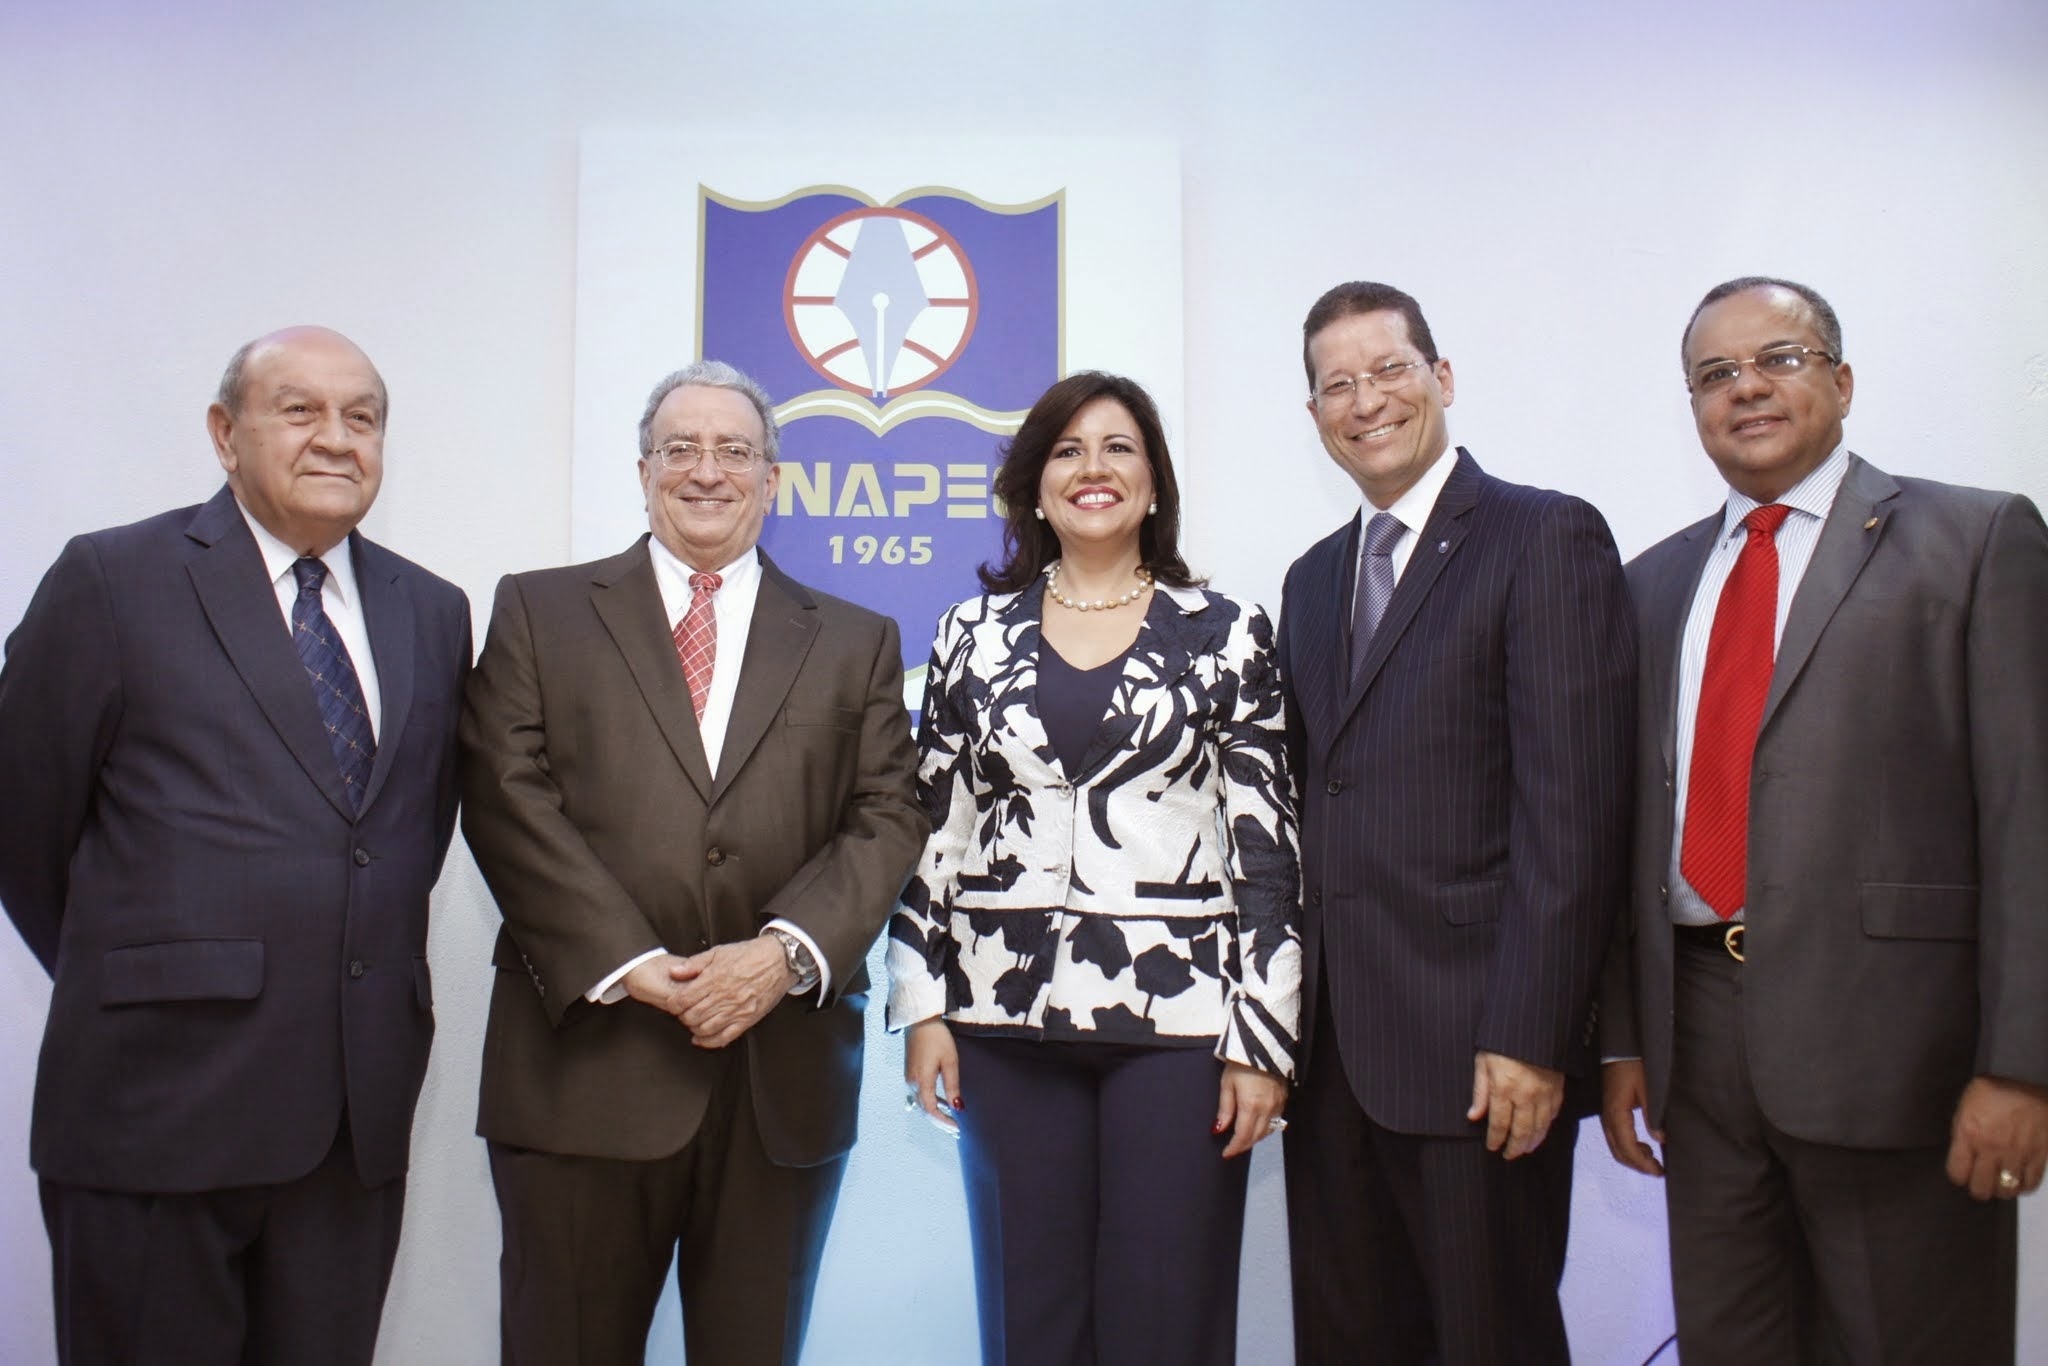 Franklin Holguín, Radhamés Mejía, Margarita Cedeño y Roberto Rodríguez Estrella